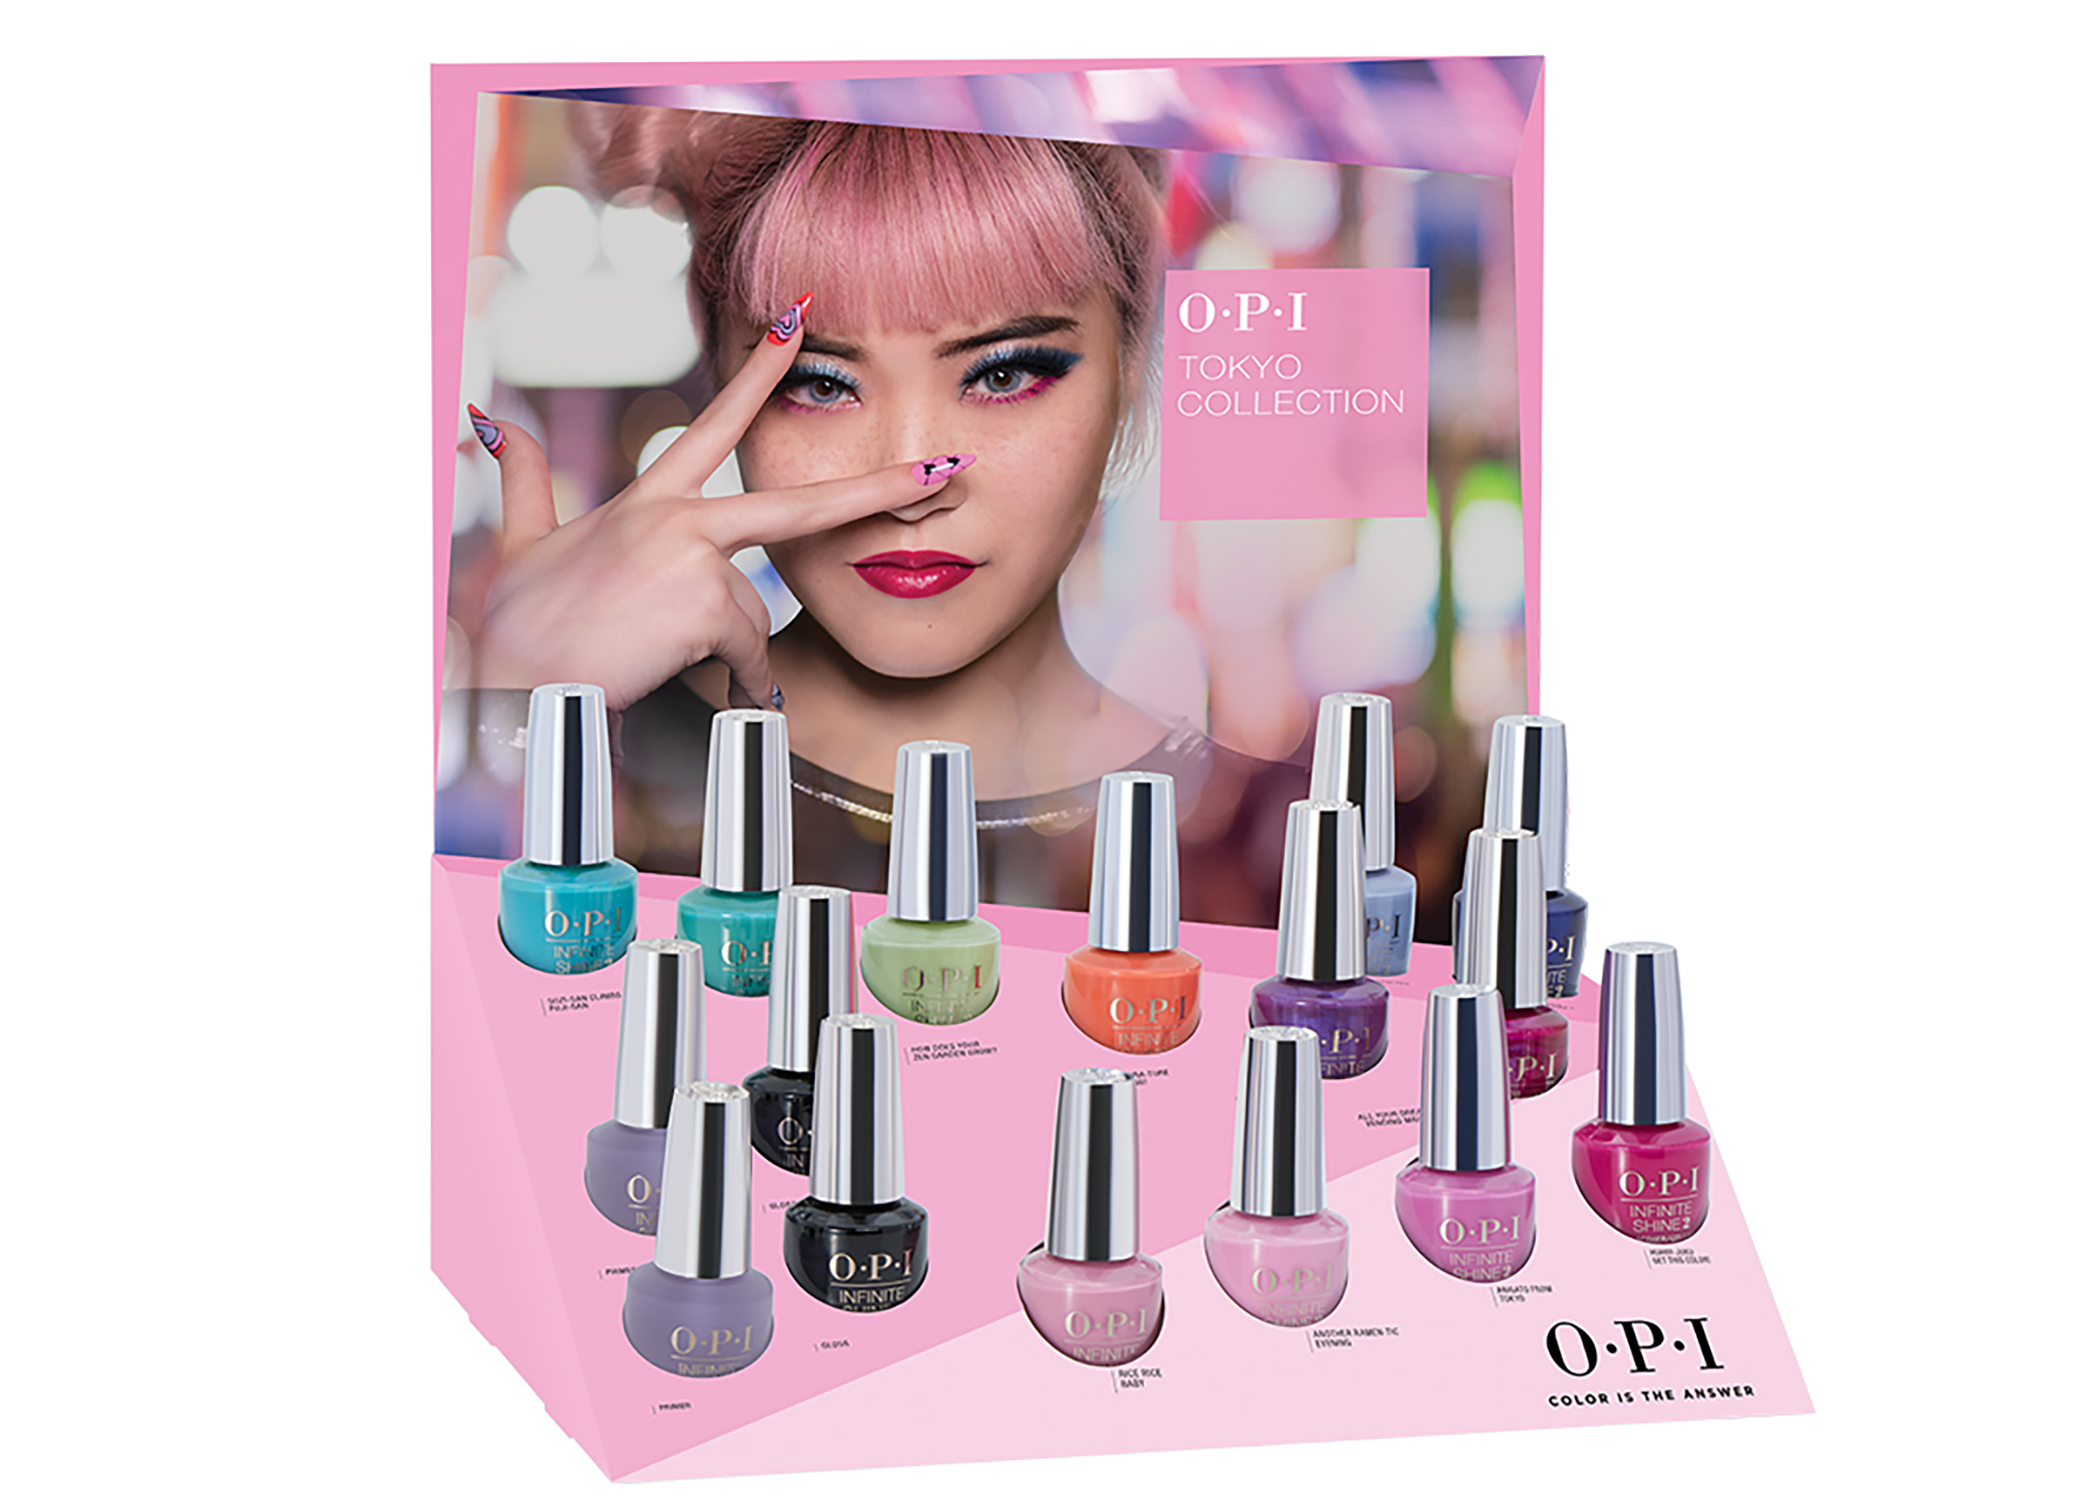 OPI Tokyo nail polish collection 2019